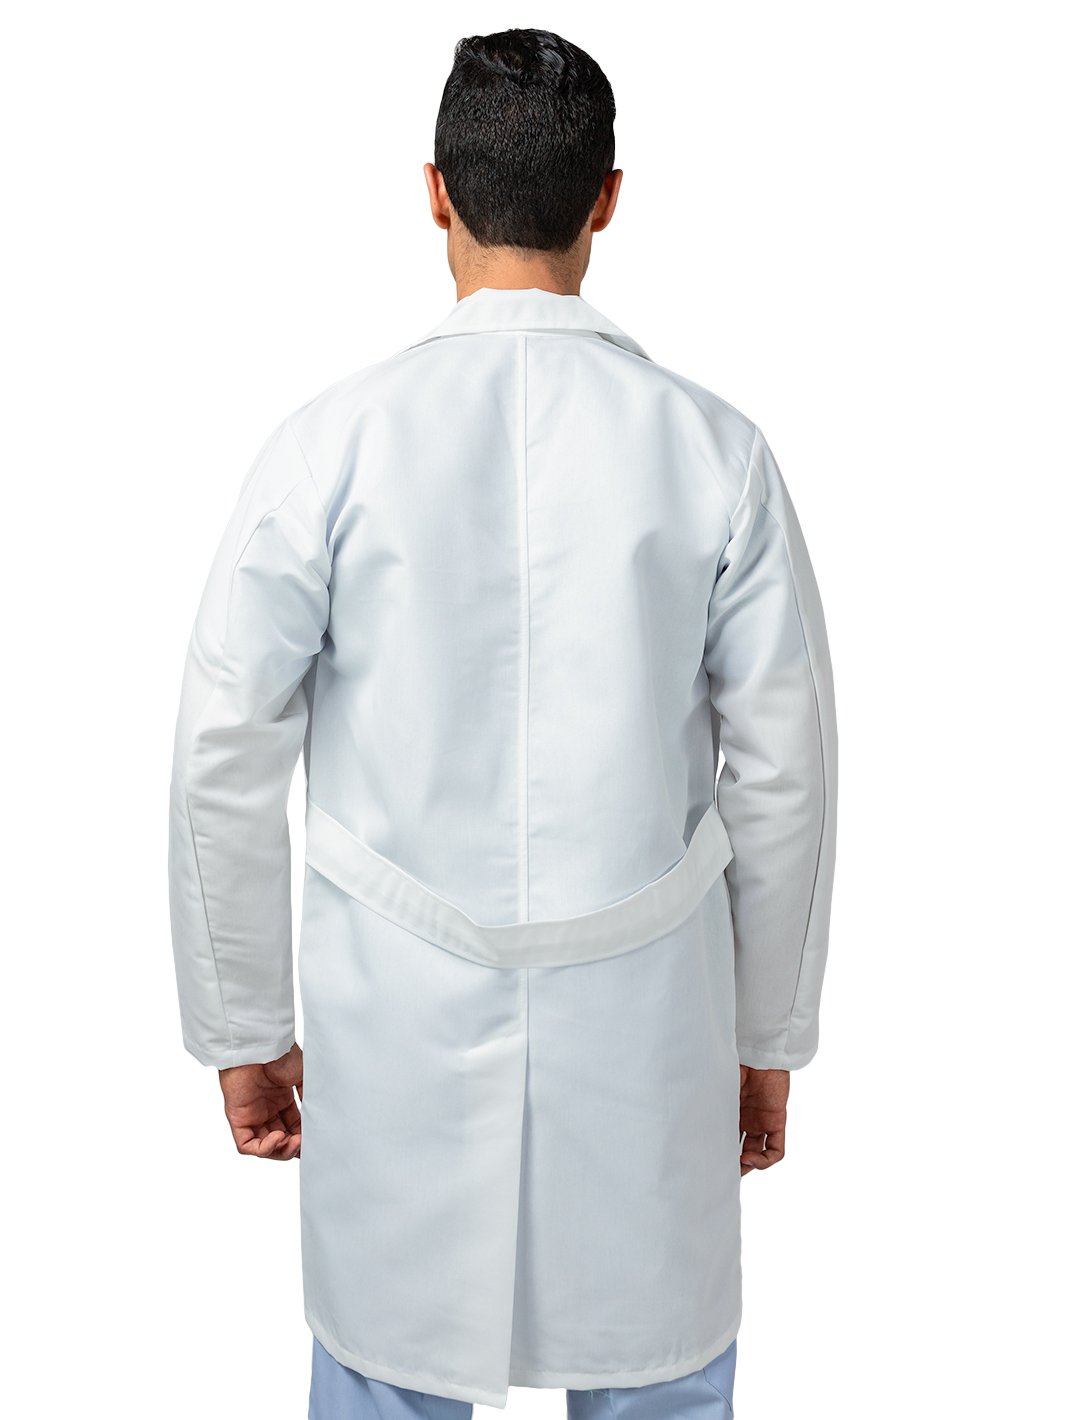 Hombre vistiendo bata de laboratorio blanca para médico con cinto suelto en la espalda